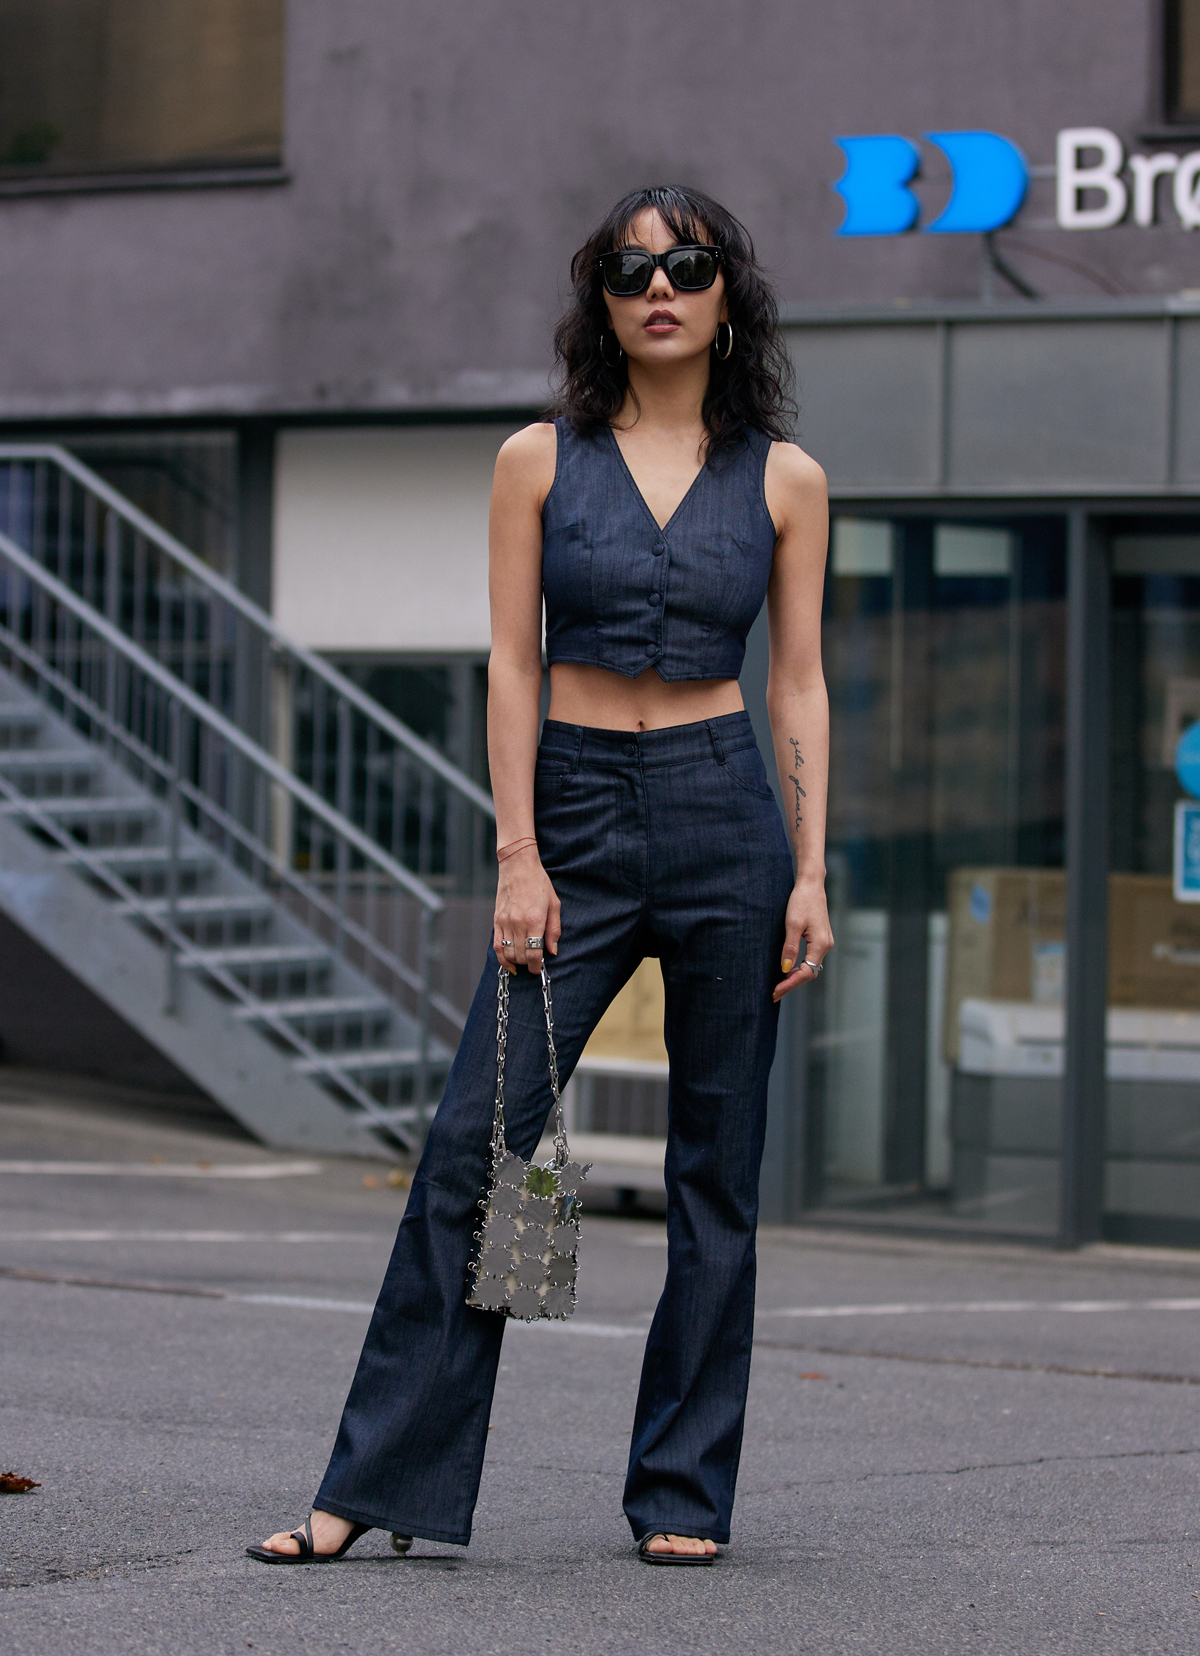 Copenhagen Fashion Week street style 2021: